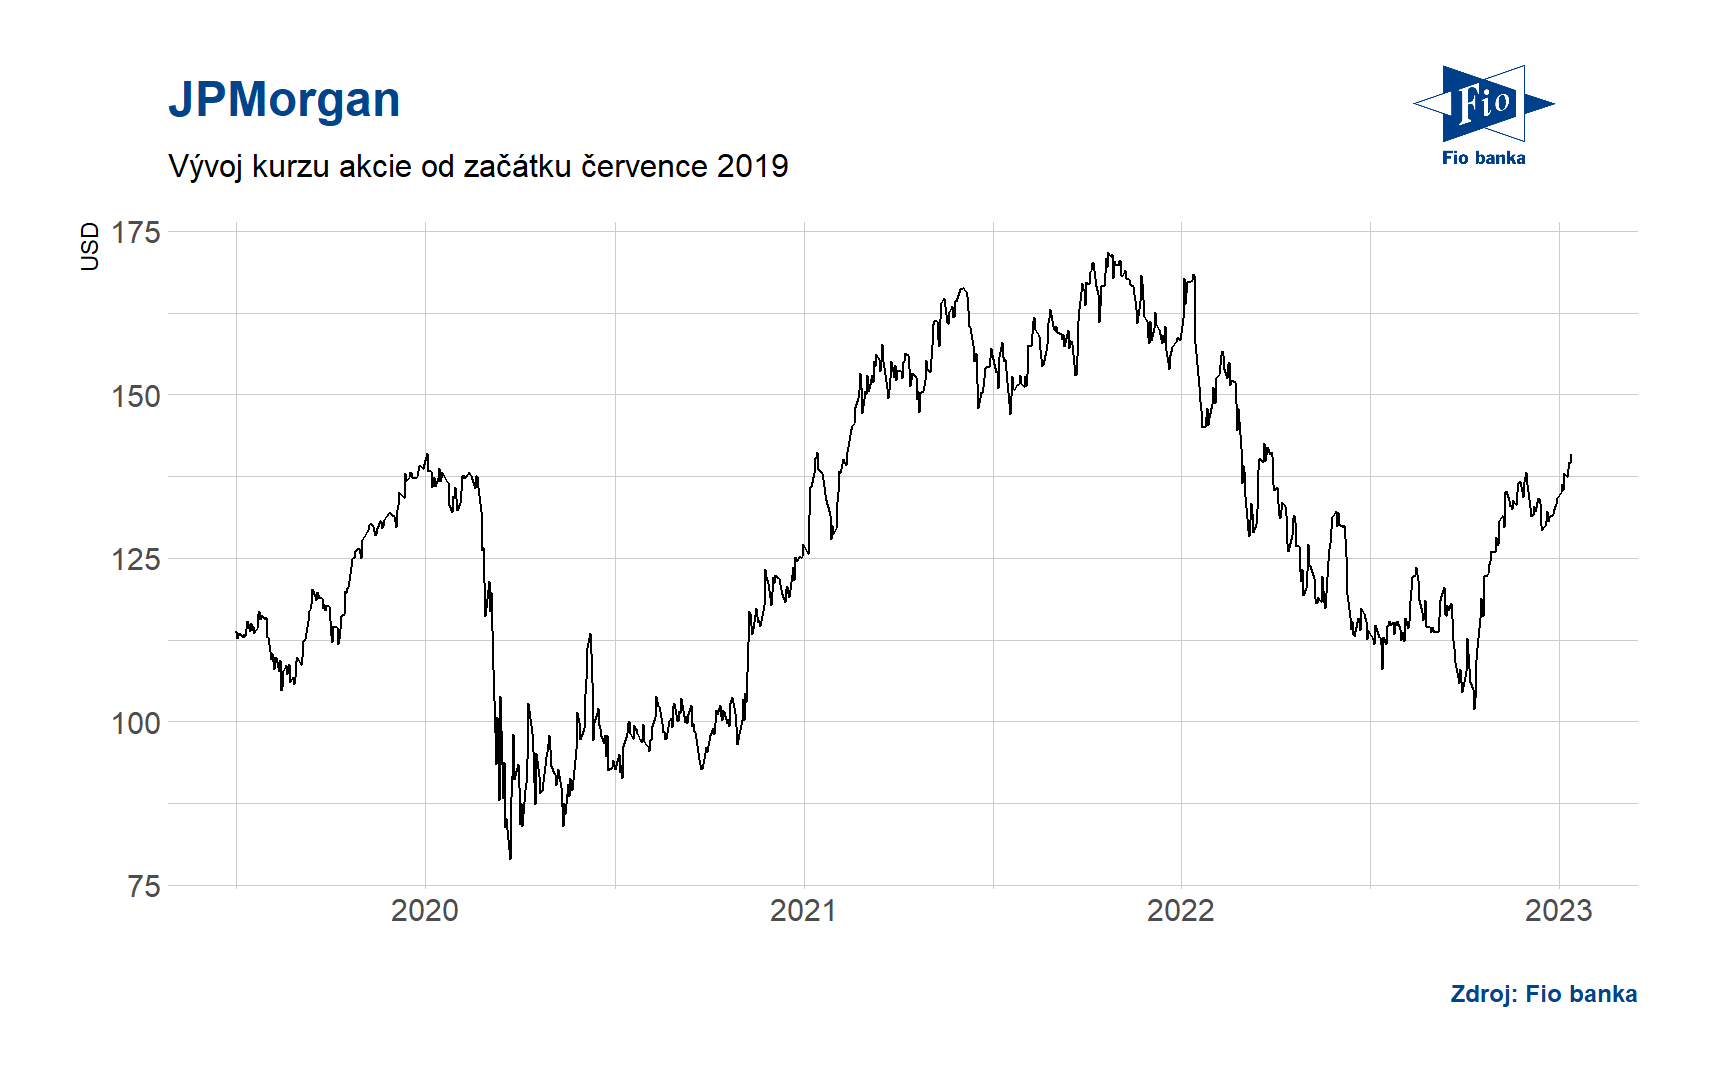 Vývoj akcií JPMorgan